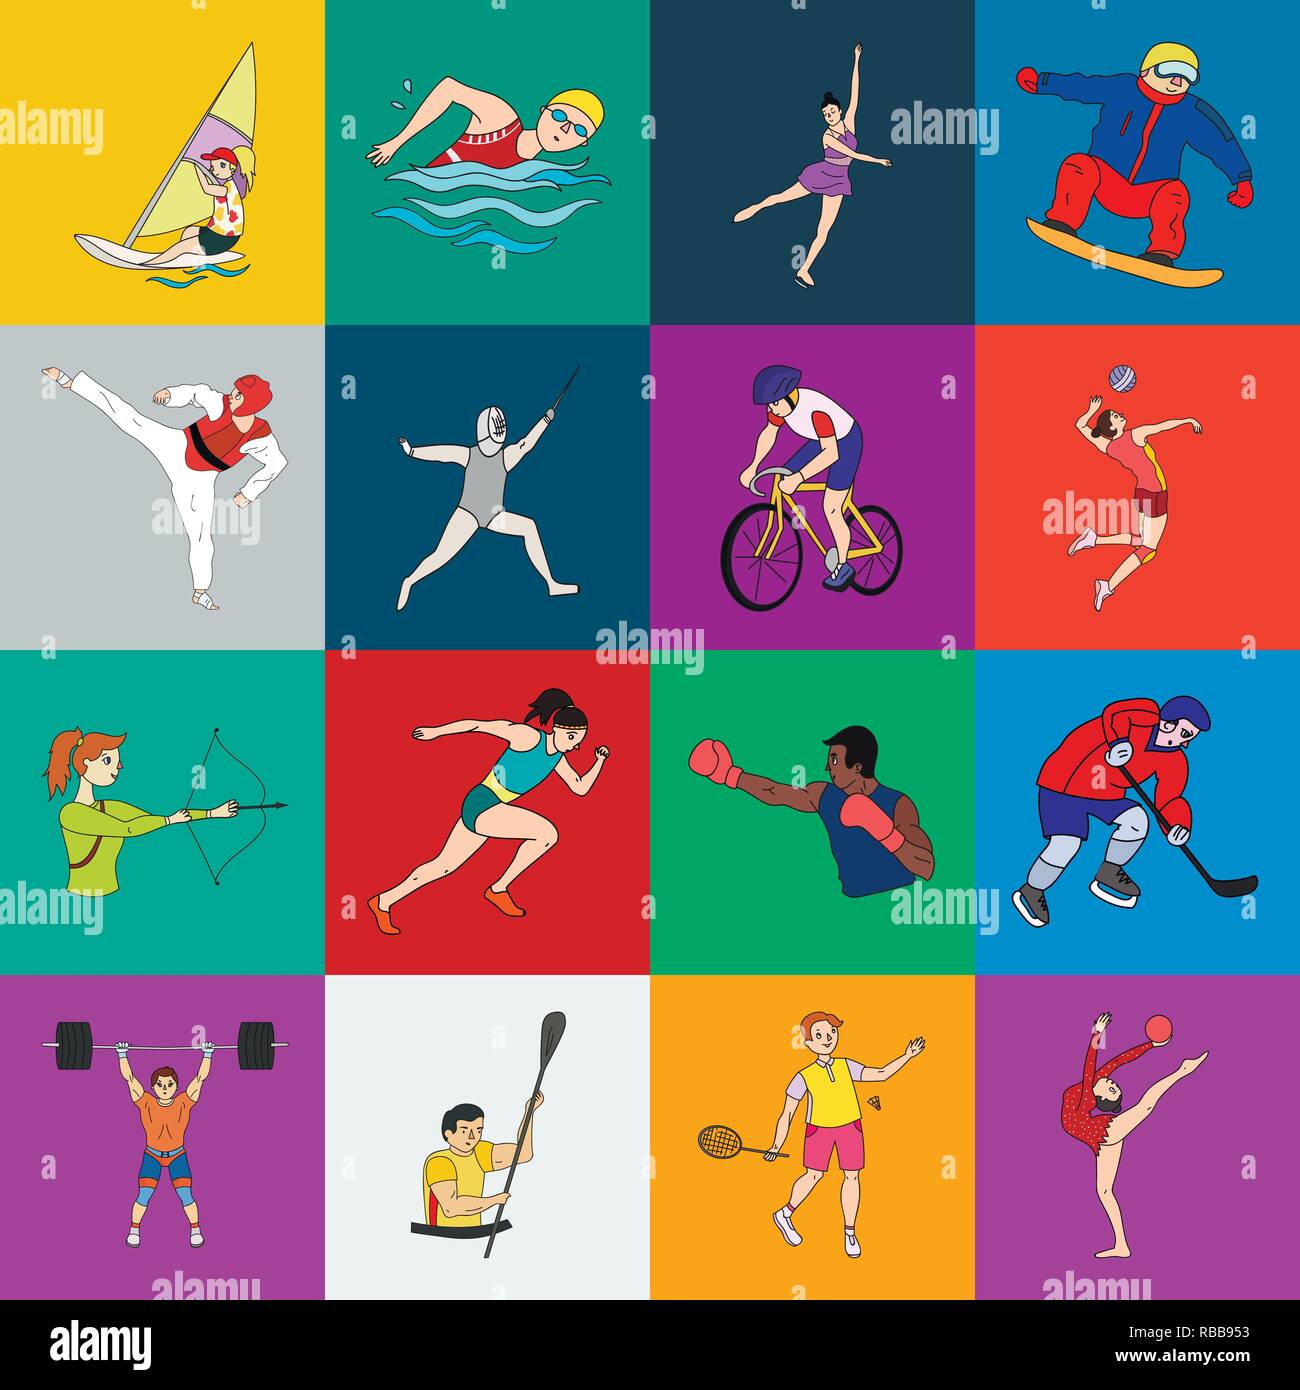 All kinds of sports. Виды спорта рисунки. Иллюстрации с разными видами спорта. Все спортивные виды спорта. Летние виды спорта.